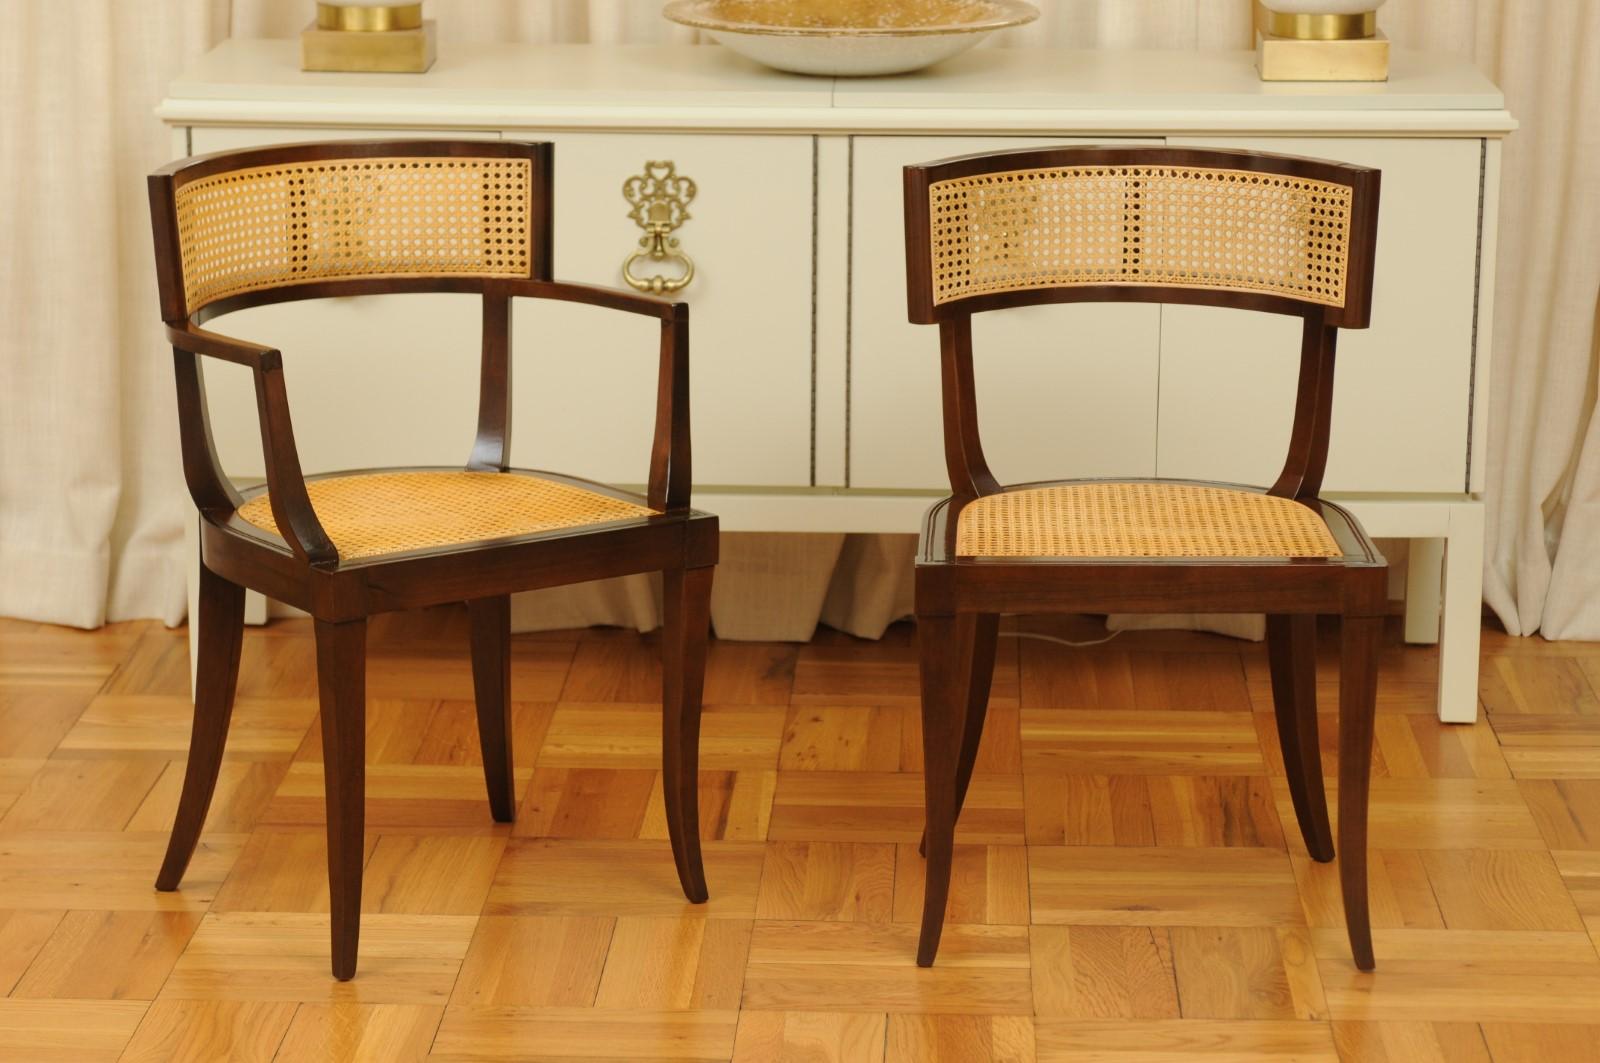 Ces magnifiques chaises de salle à manger sont expédiées telles qu'elles ont été photographiées par des professionnels et décrites dans le texte de l'annonce : Méticuleusement restaurées par des professionnels et prêtes à être installées. Ce grand